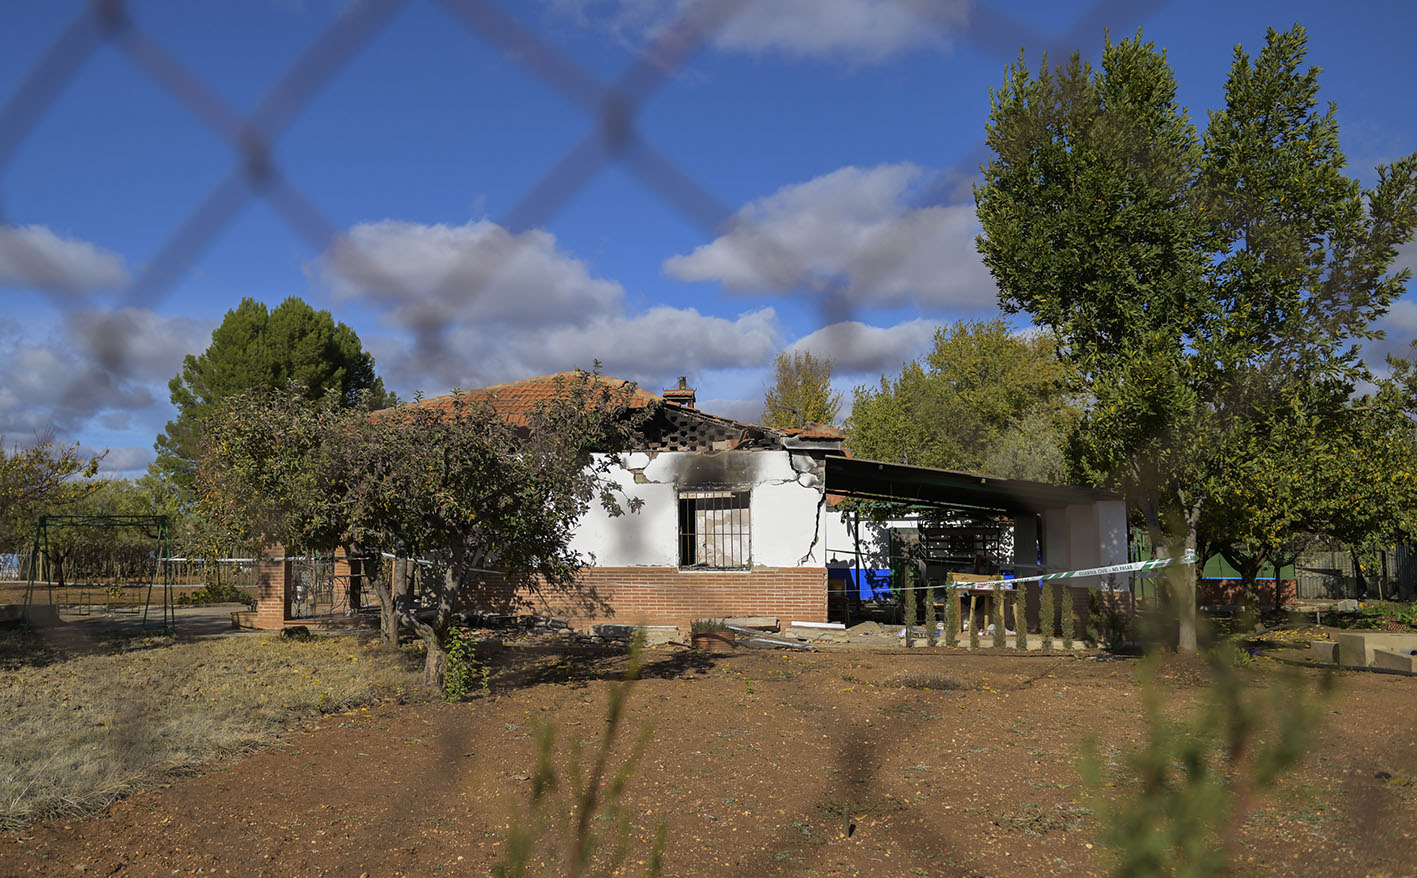 Casa de campo donde se produjo el tiroteo y que fue incenciada posteriormente, en Argamasilla de Calatrava. Foto: EFE/Jesús Monroy.